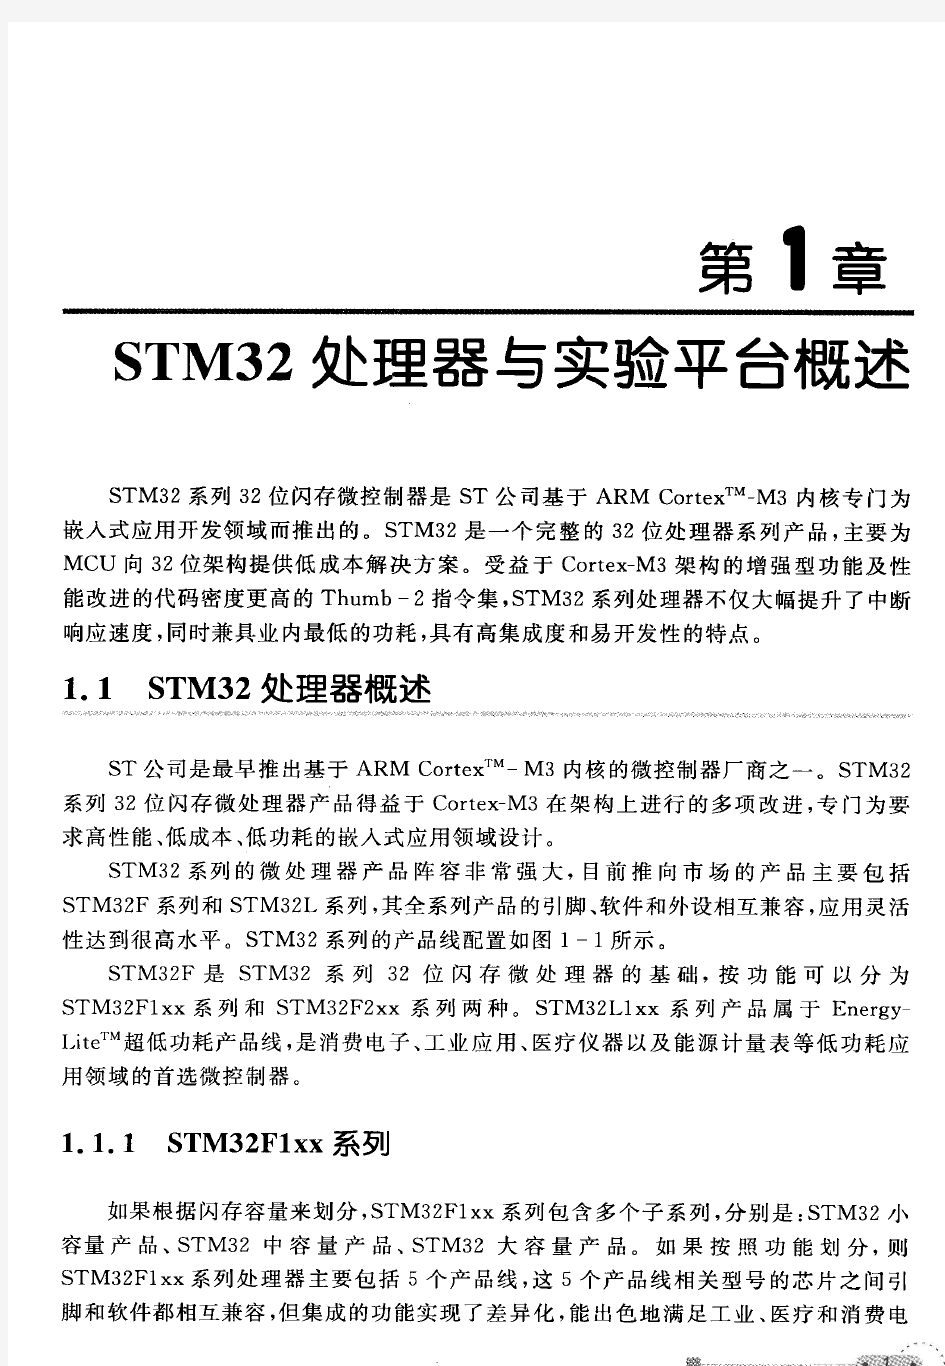 嵌入式实时操作系统uCOS-II经典实例 基于STM32处理器